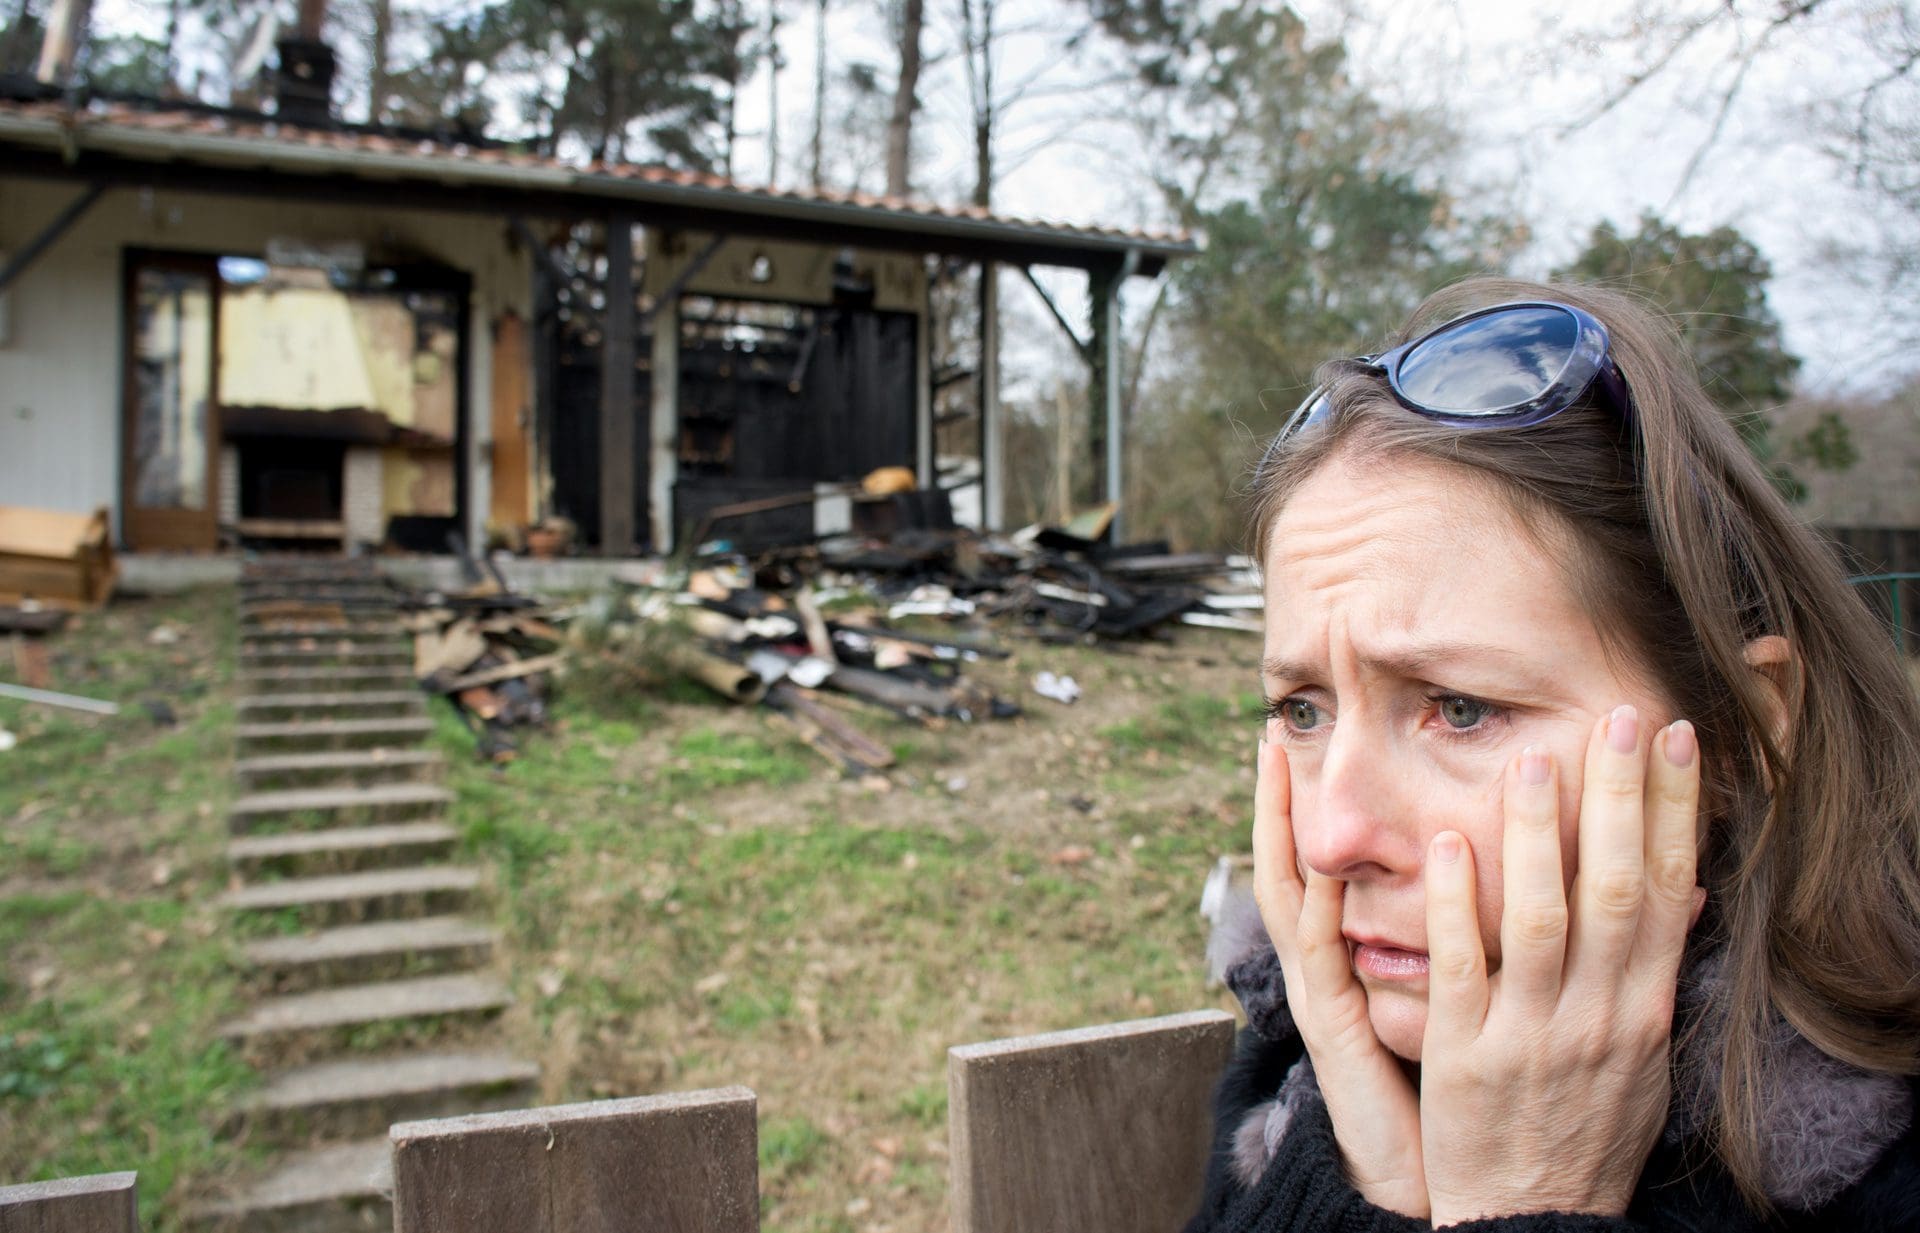 Haus abgebrannt - Versicherung zahlt nicht nach Hausbrand? (© Eléonore H / stock.adobe.com)